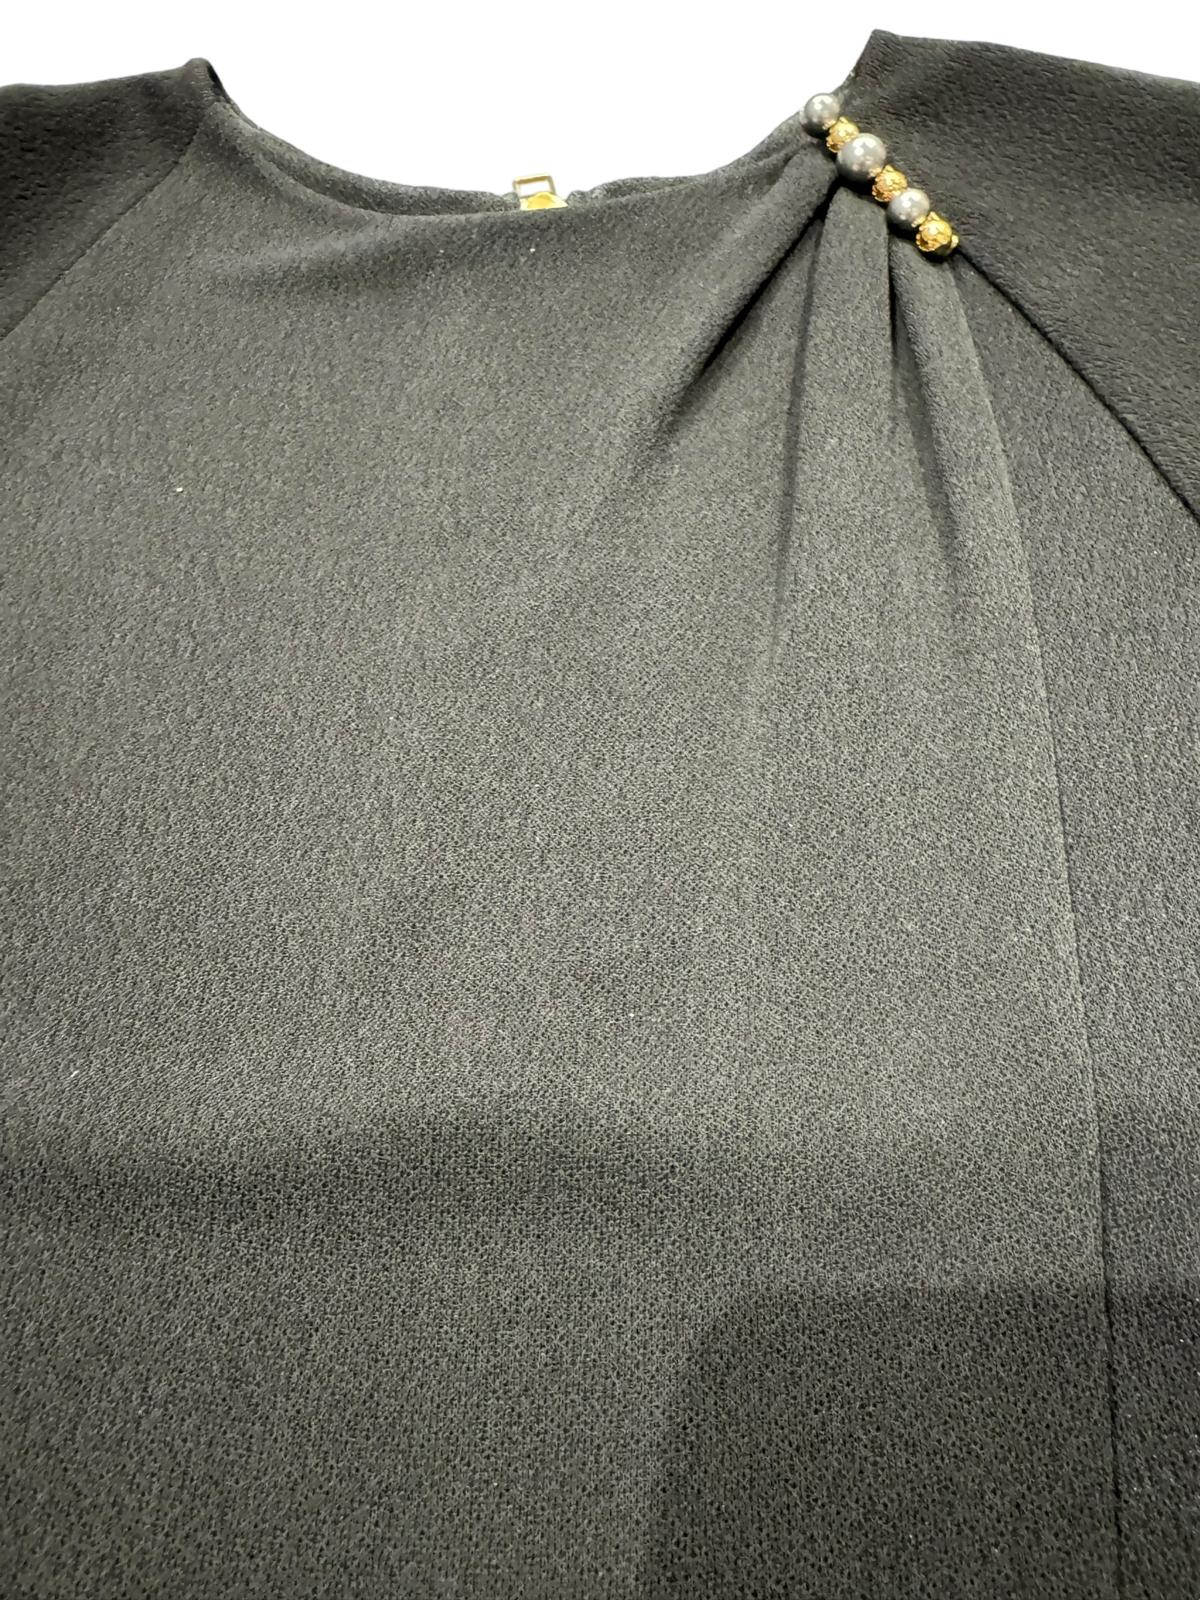 Louis Vuitton Robe longue Noir S - Les Folies d&